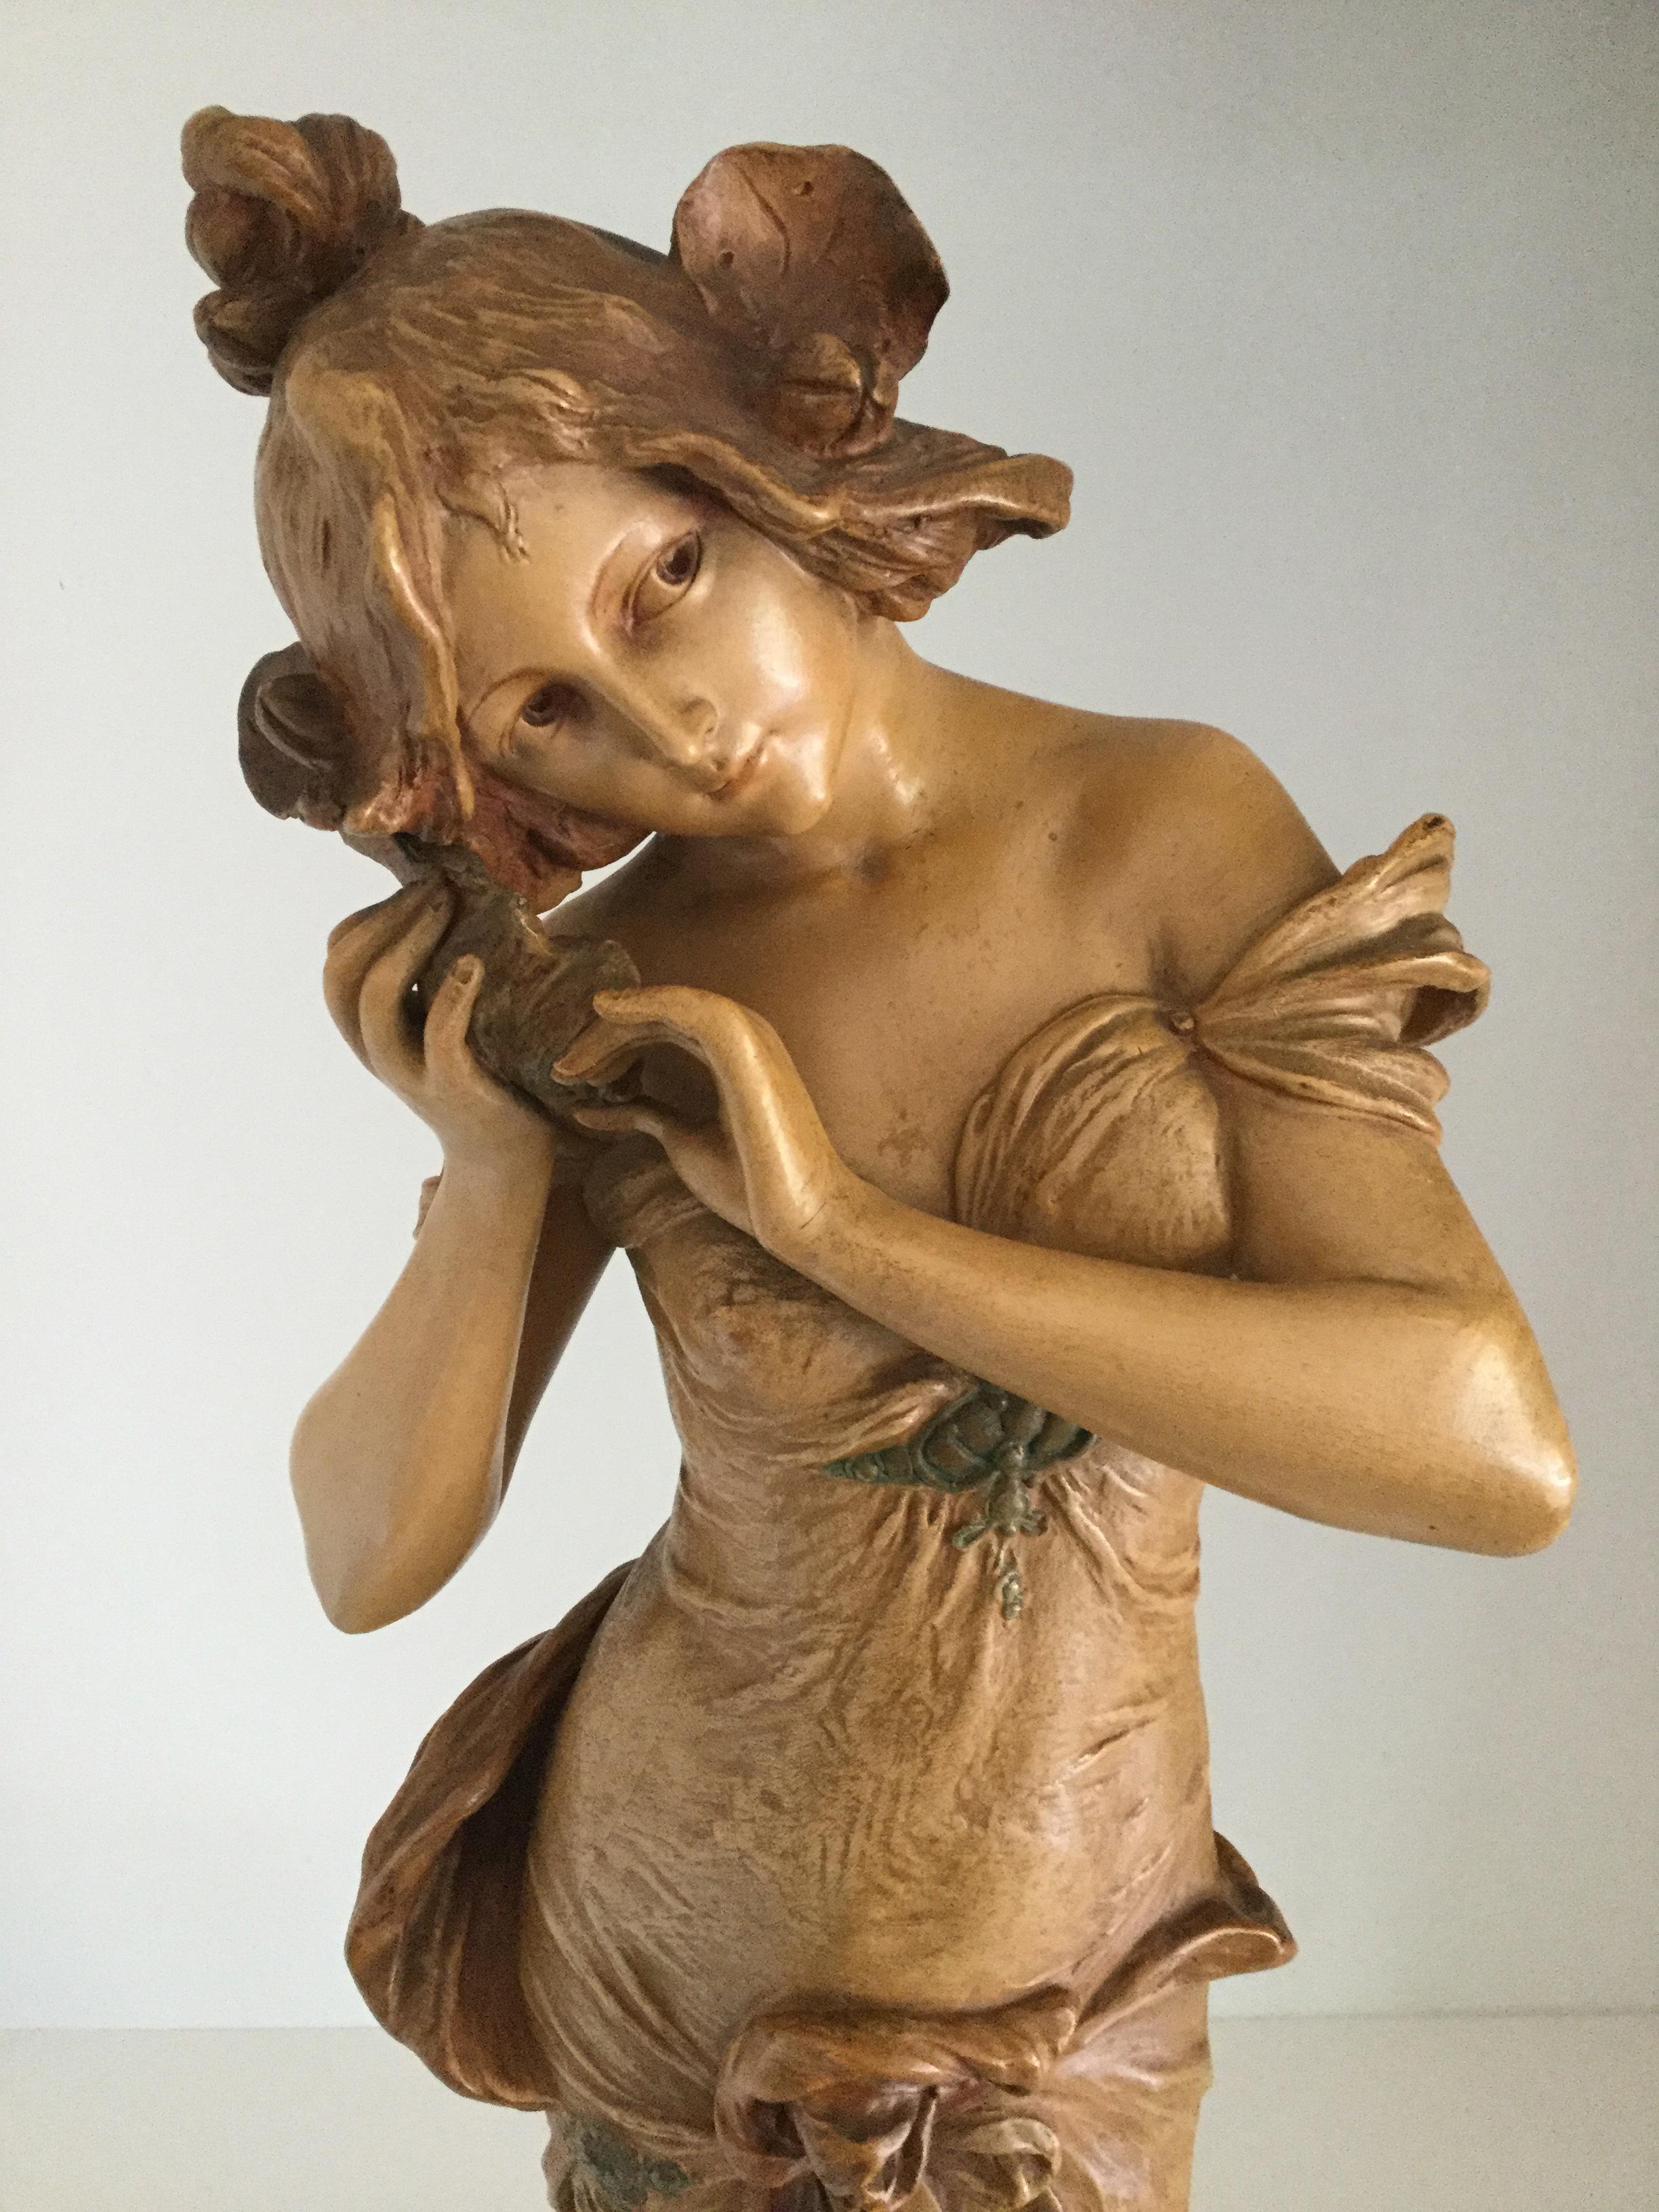 Österreichische Ernst-Wahliss-Jugendstil-Figur, um 1880

Ernst Wahliss (1837-1900), Österreichische Jugendstil-Keramikskulptur einer halb drapierten Jungfrau, die einer Muschel lauscht, modelliert in einem langen, kaskadenartigen Gewand mit